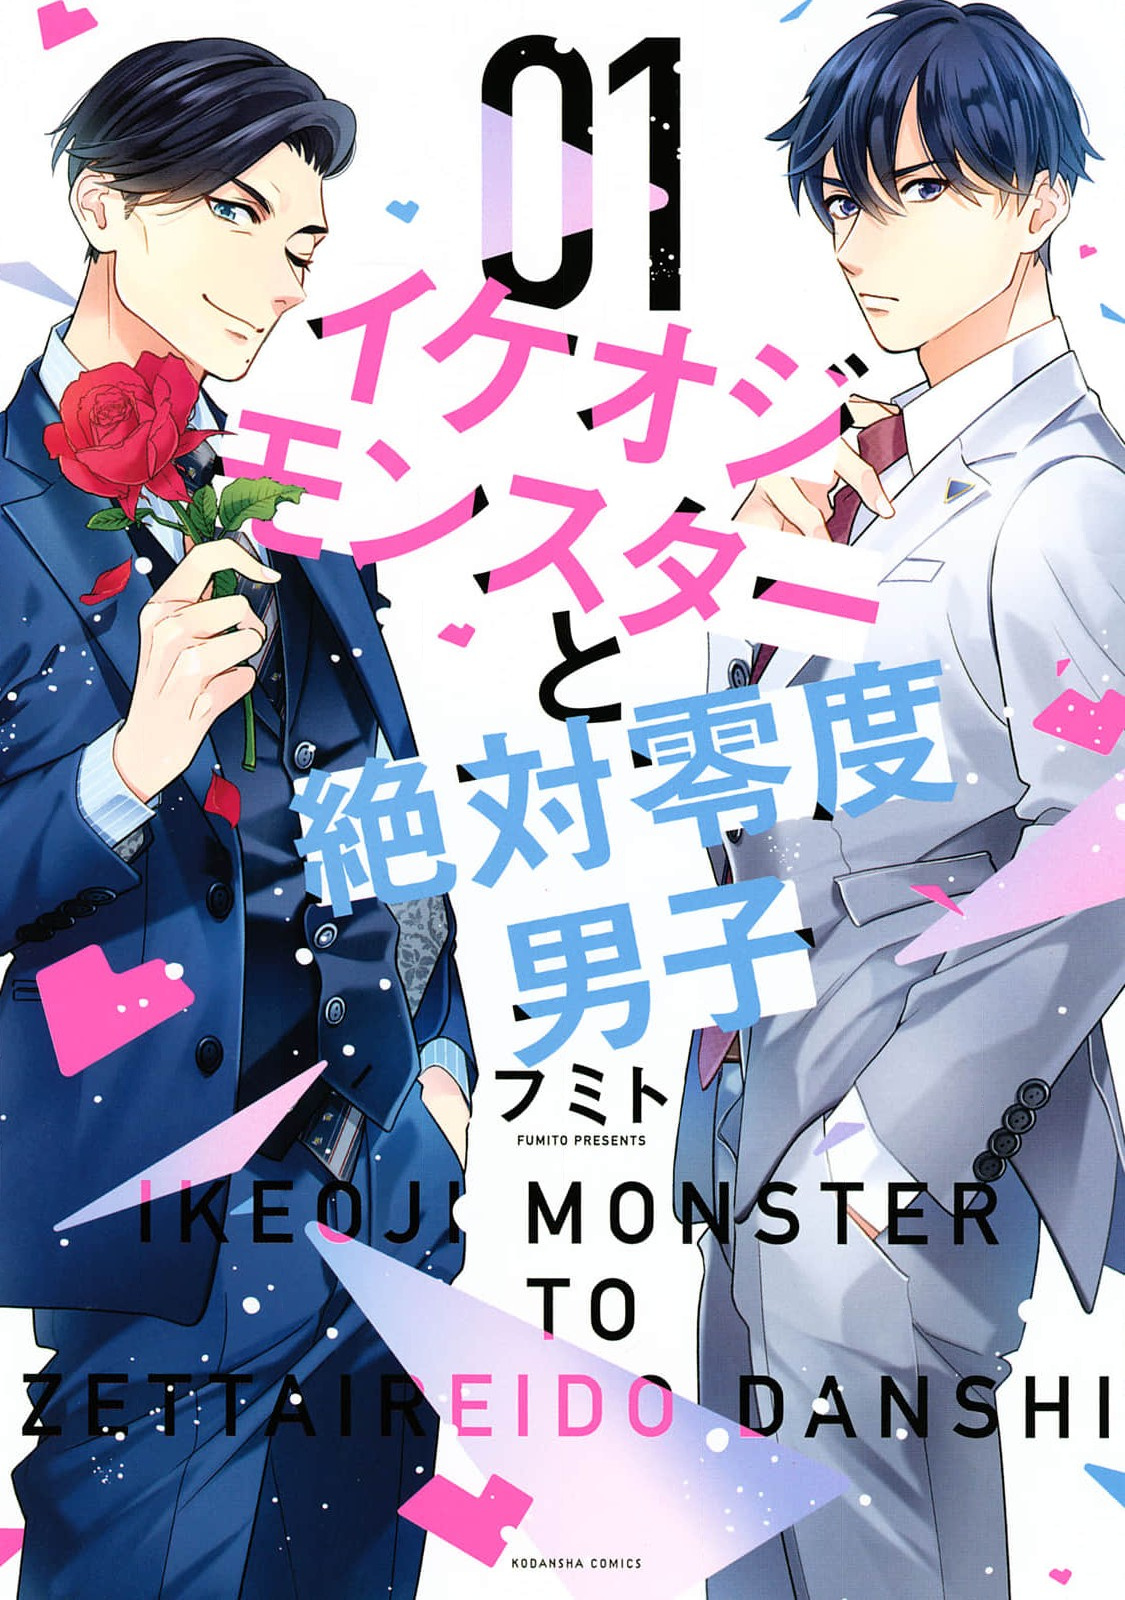 Ikeoji Monster To Zettai Reido Danshi Vol.1 Chapter 2 - Picture 1